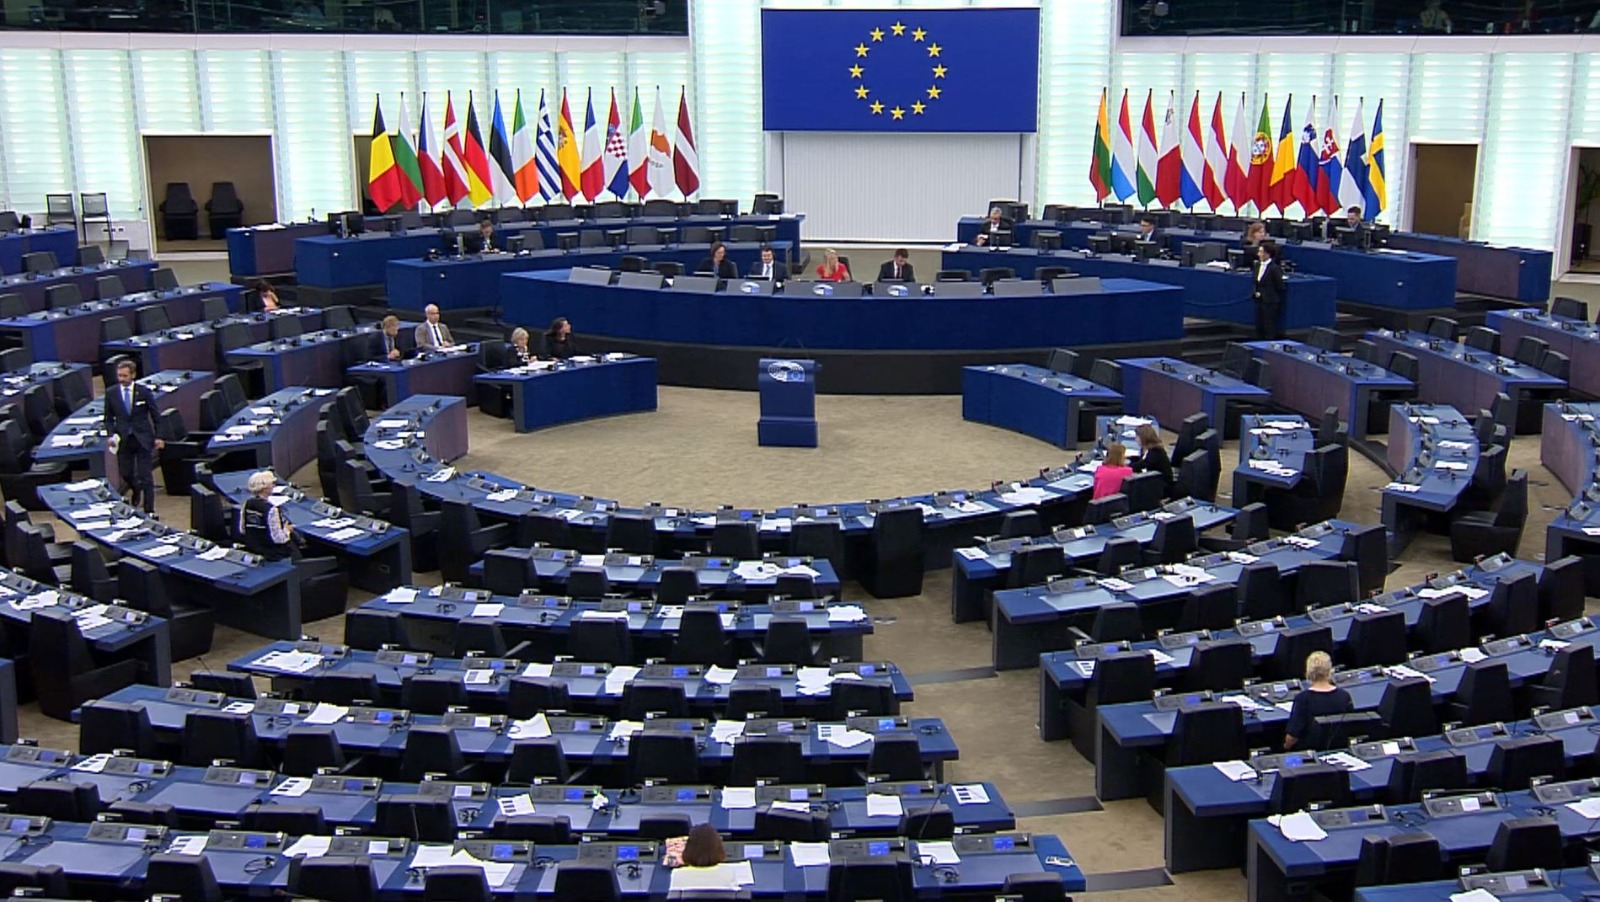  El debate que tuvo lugar ayer fue previo a la votación de los parlamentarios para aprobar la resolución como organismo. (Foto Prensa Libre: Captura de pantalla Parlamento Europeo)